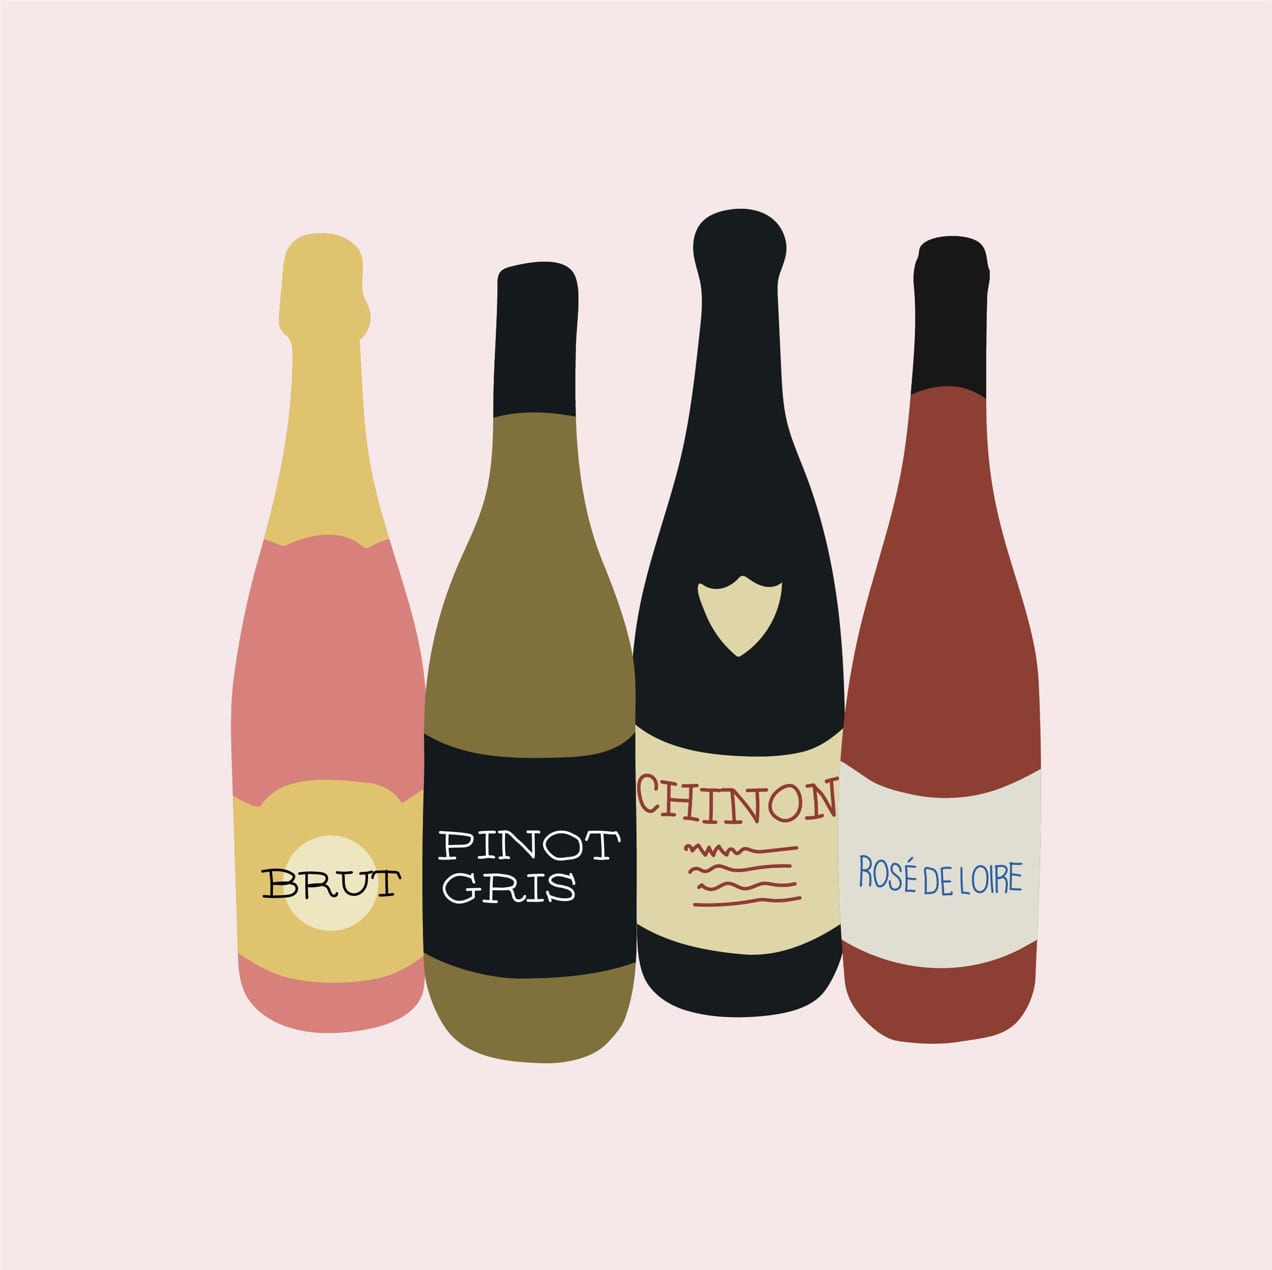 illustration of four bottles of wine